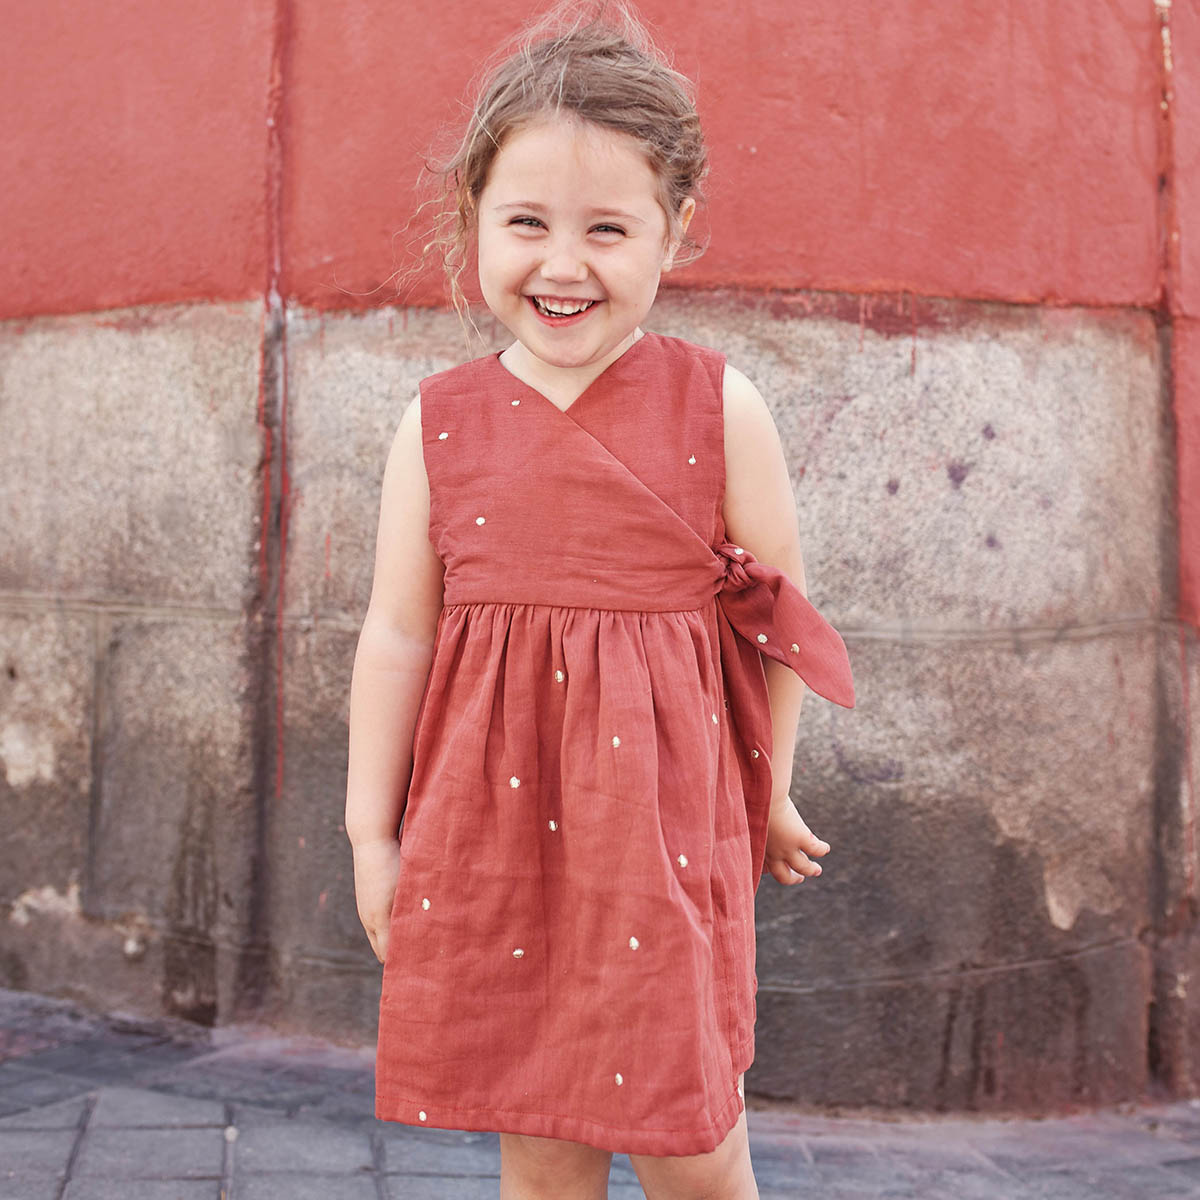 Petite Fille Dans La Jupe Rouge Photo stock - Image du enfant